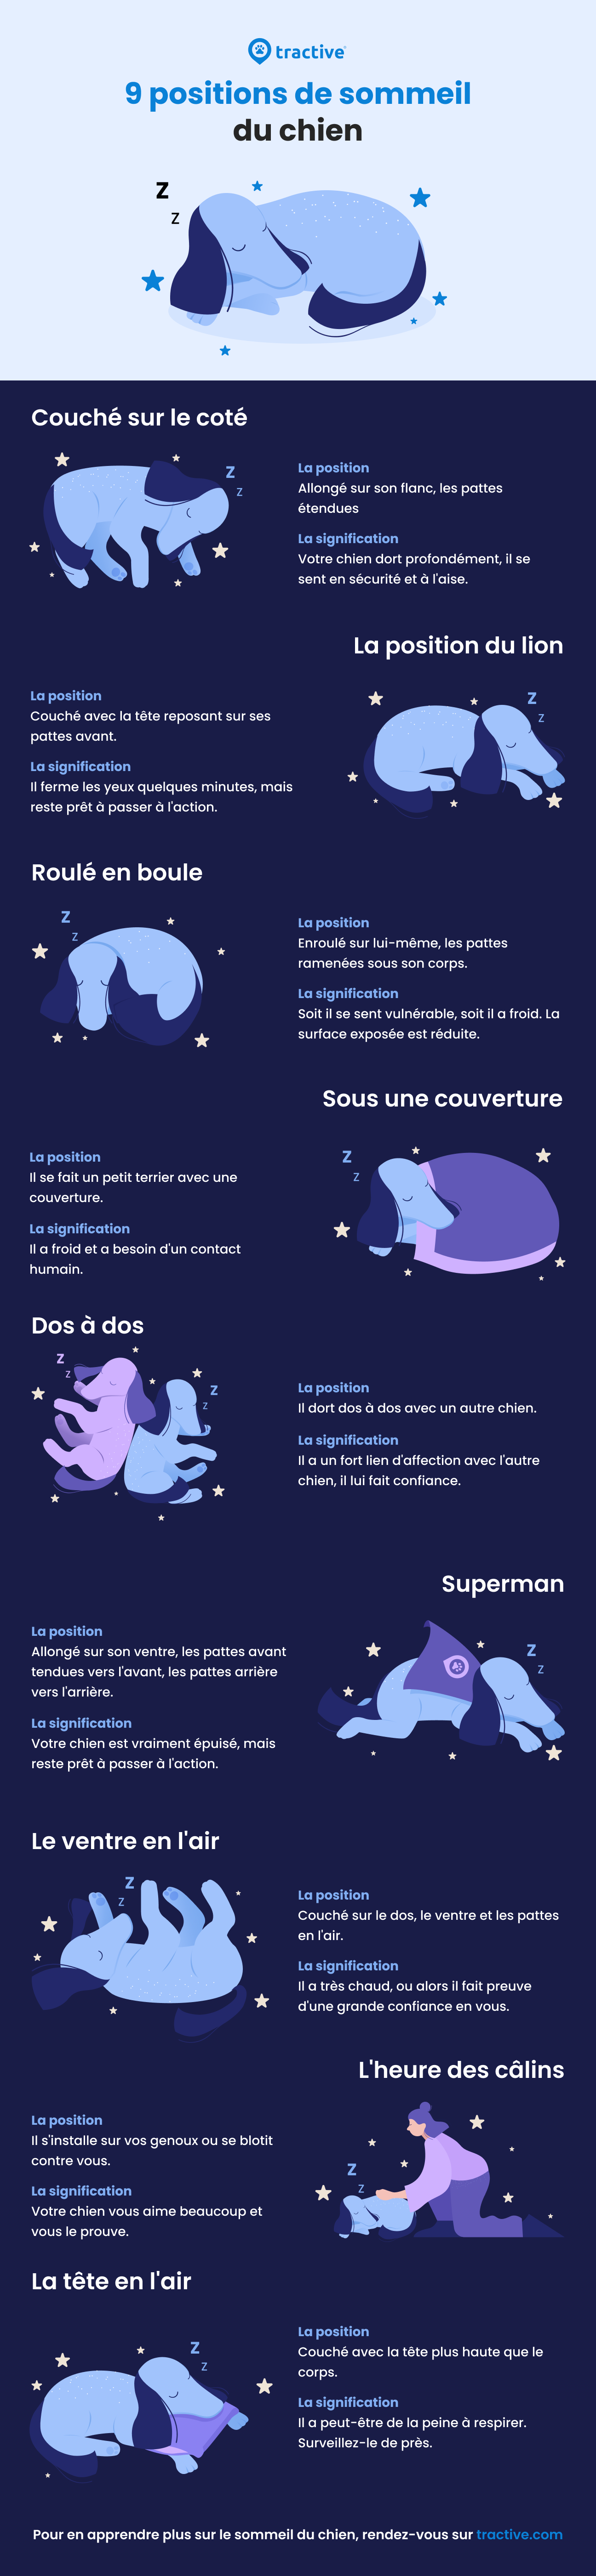 Infographie : Les positions de sommeil des chiens